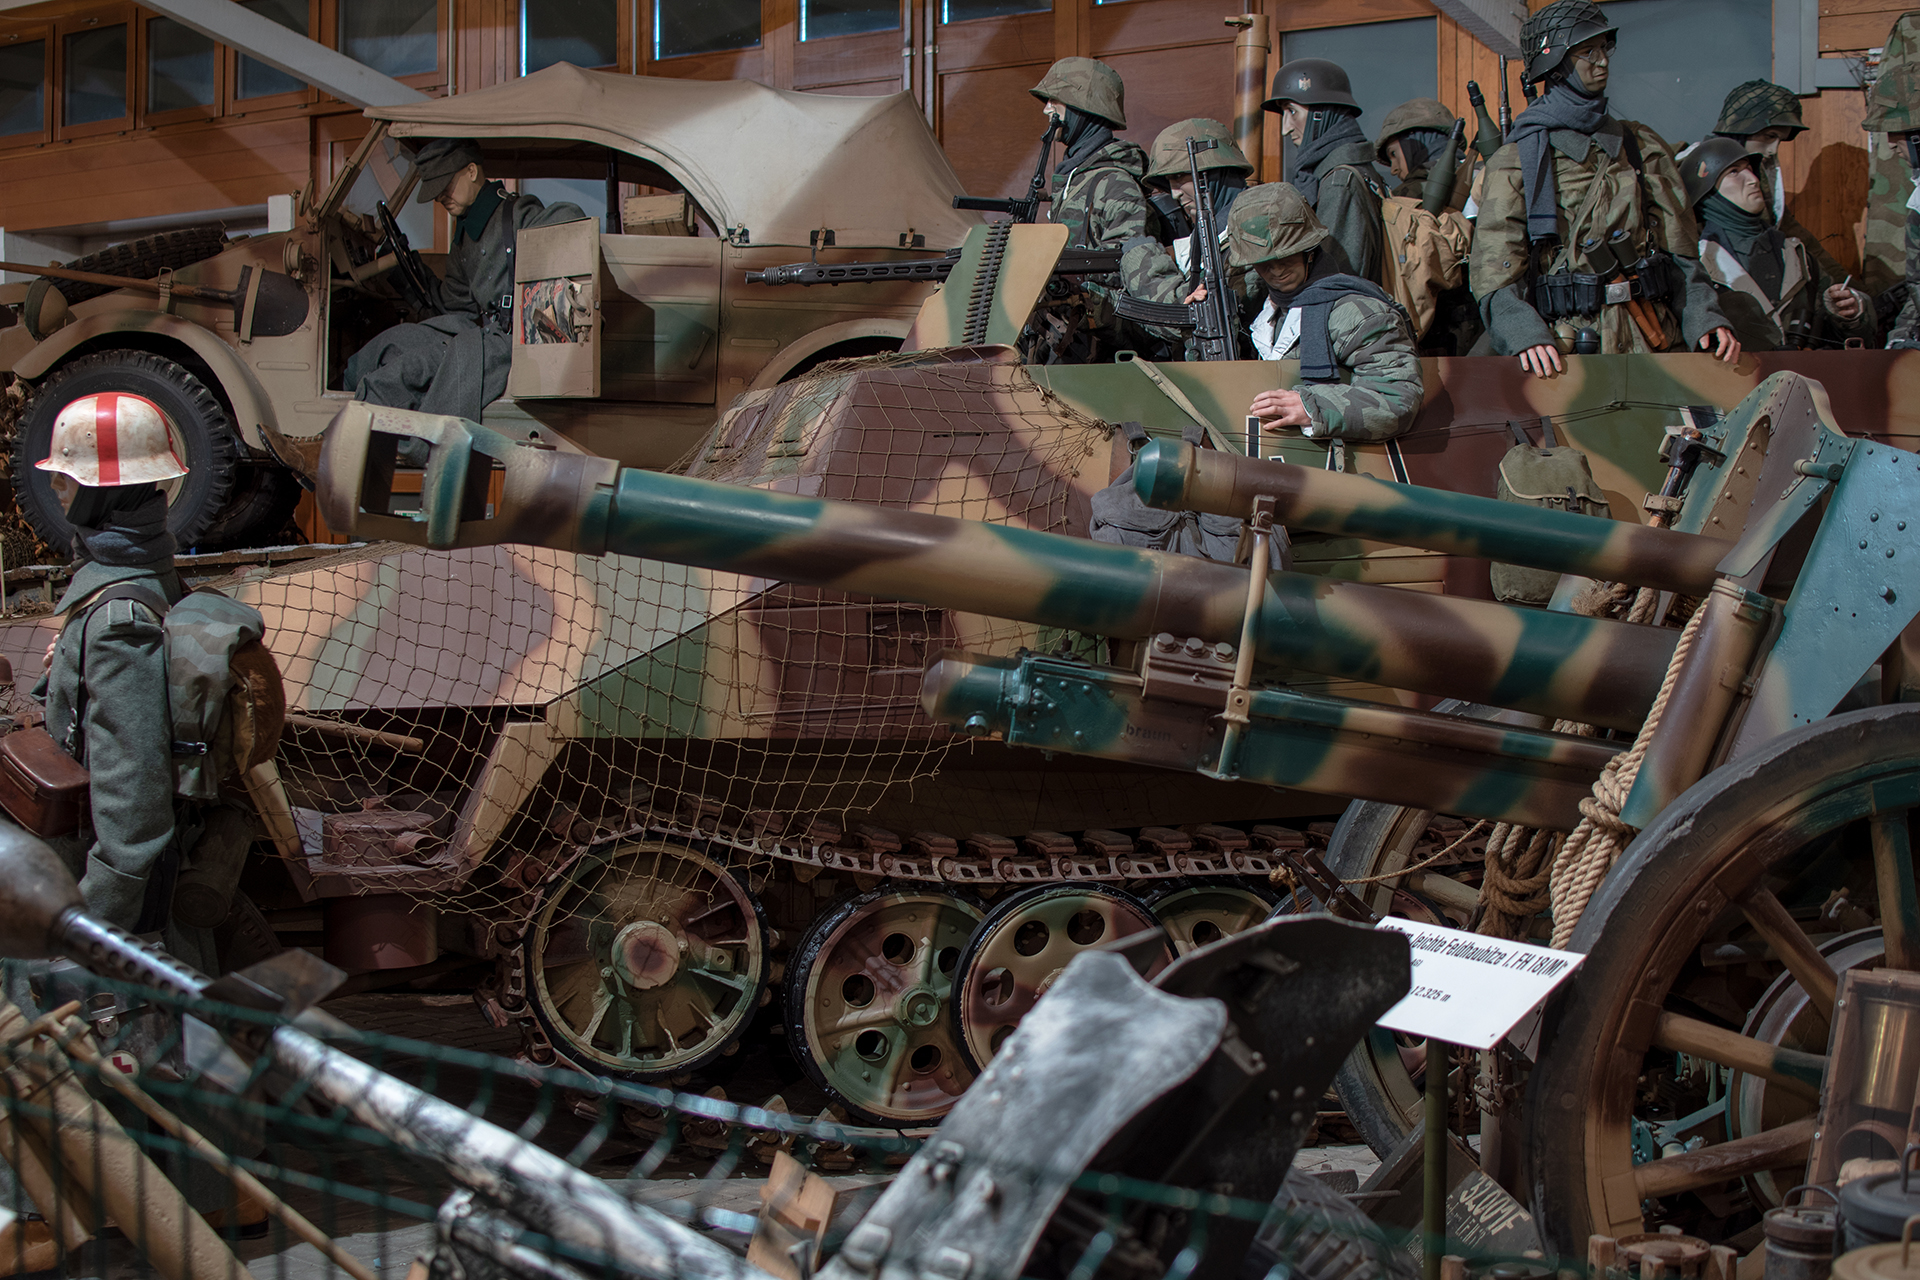 Hanomag Schützenpanzerwagen Sd.Kfz. 251 1944 side - Musée National d'Histoire Militaire, Diekirch